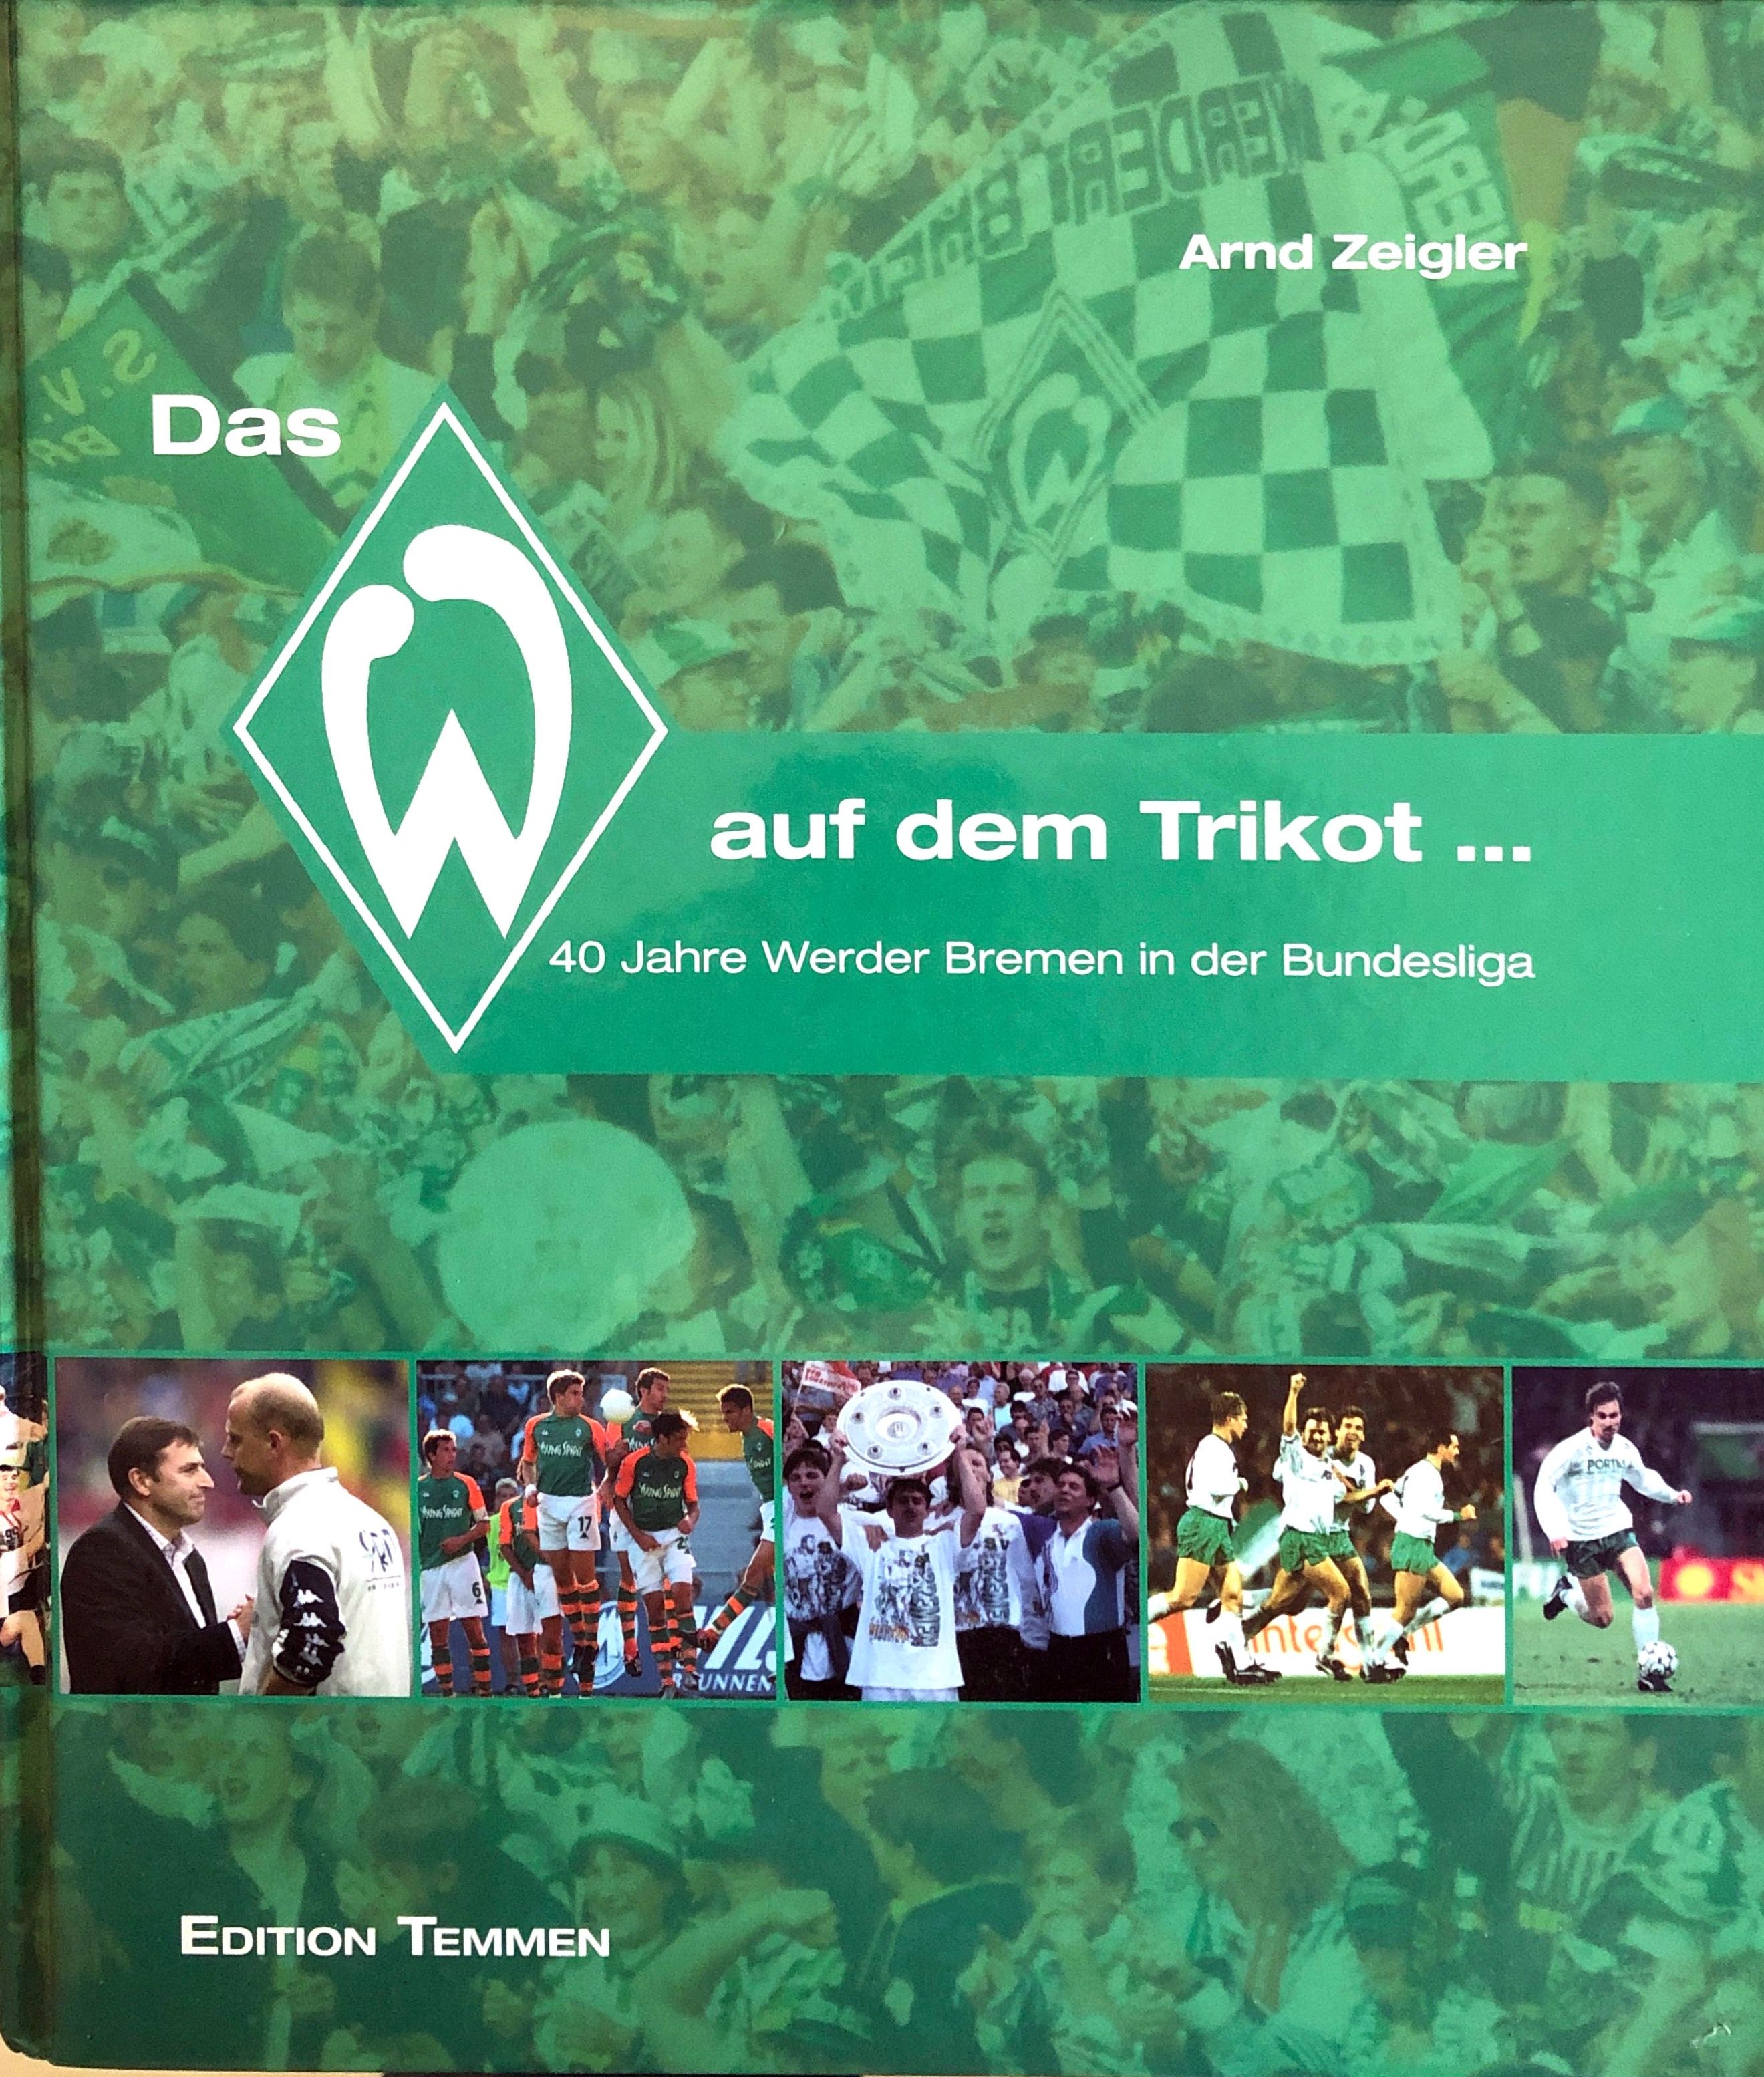 Das W auf dem Trikot... 40 Jahre Werder Bremen in der Bundesliga.